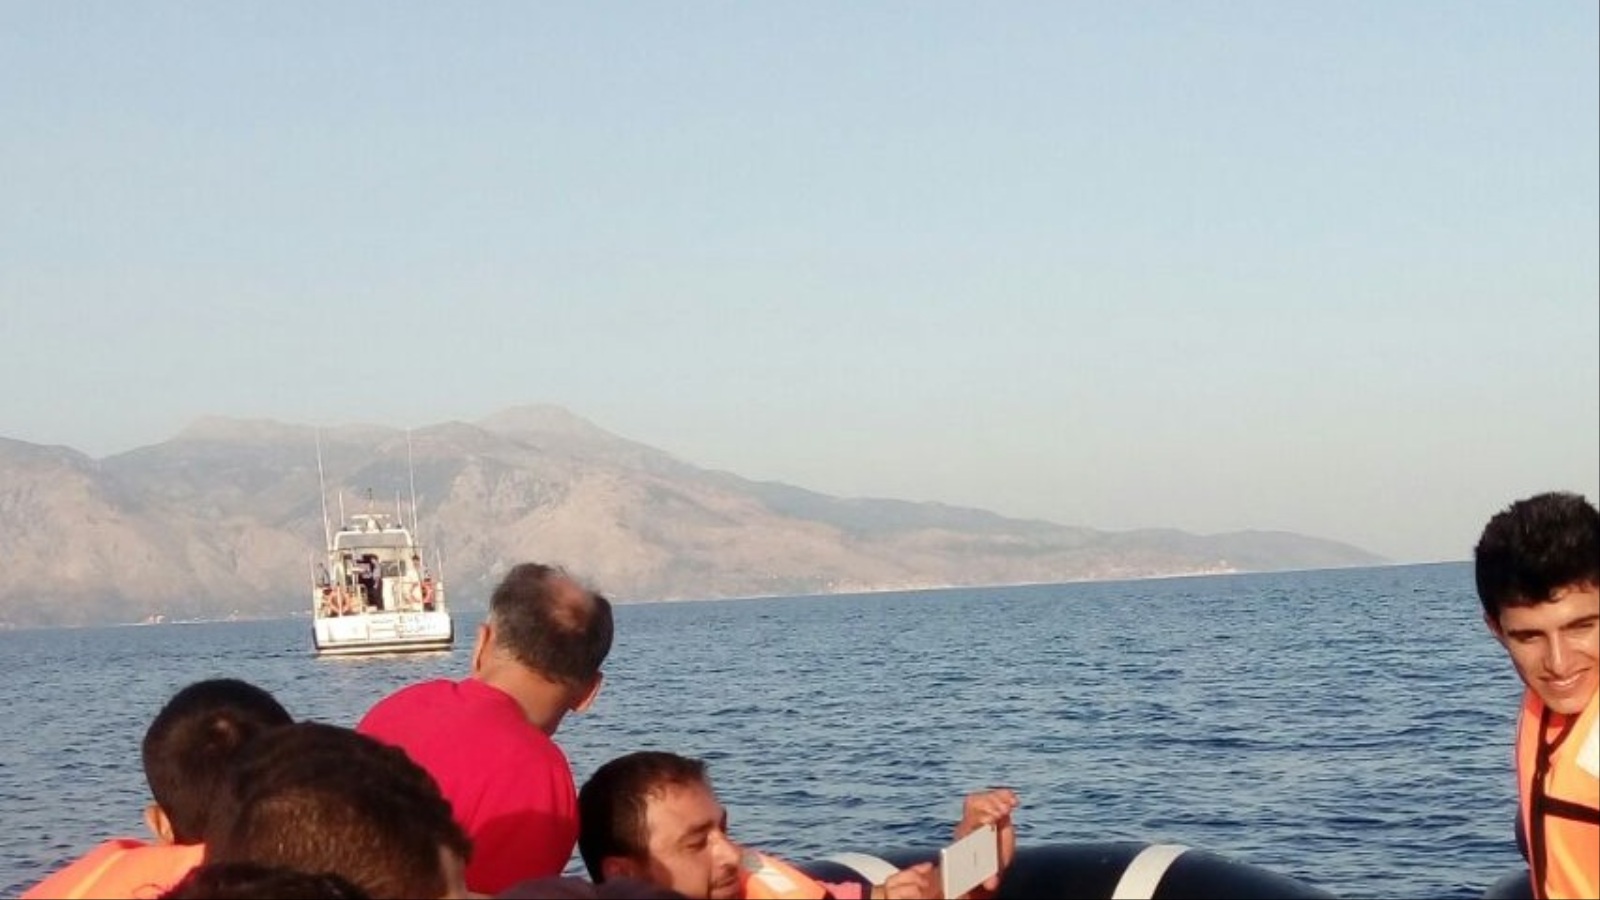 لاجئ سوري يلتقط صورة (سيلفي) في عرض بحر إيجة الفاصل بين الشواطئ التركية واليونانية(الجزيرة)